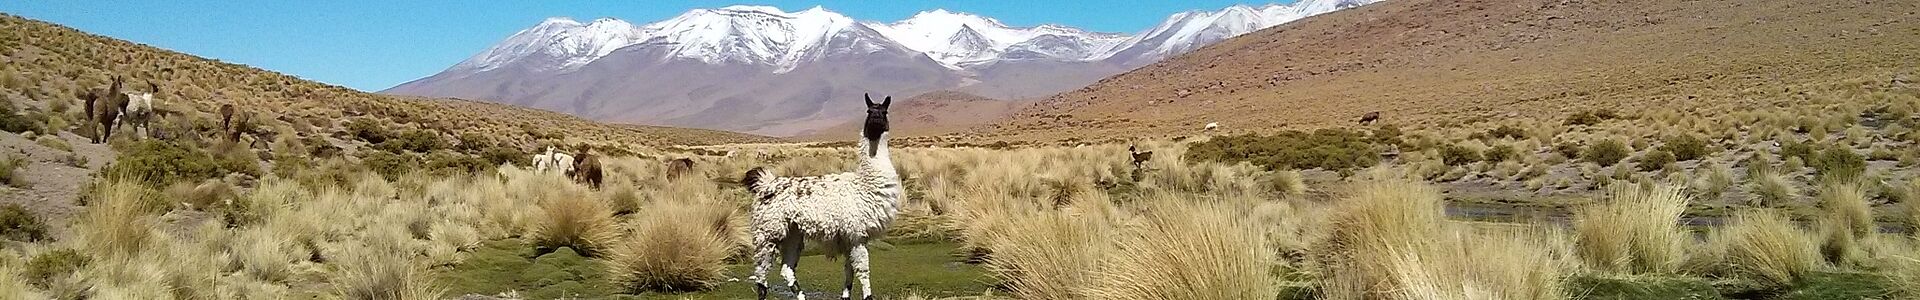 Weißes Lama vor den Bergen